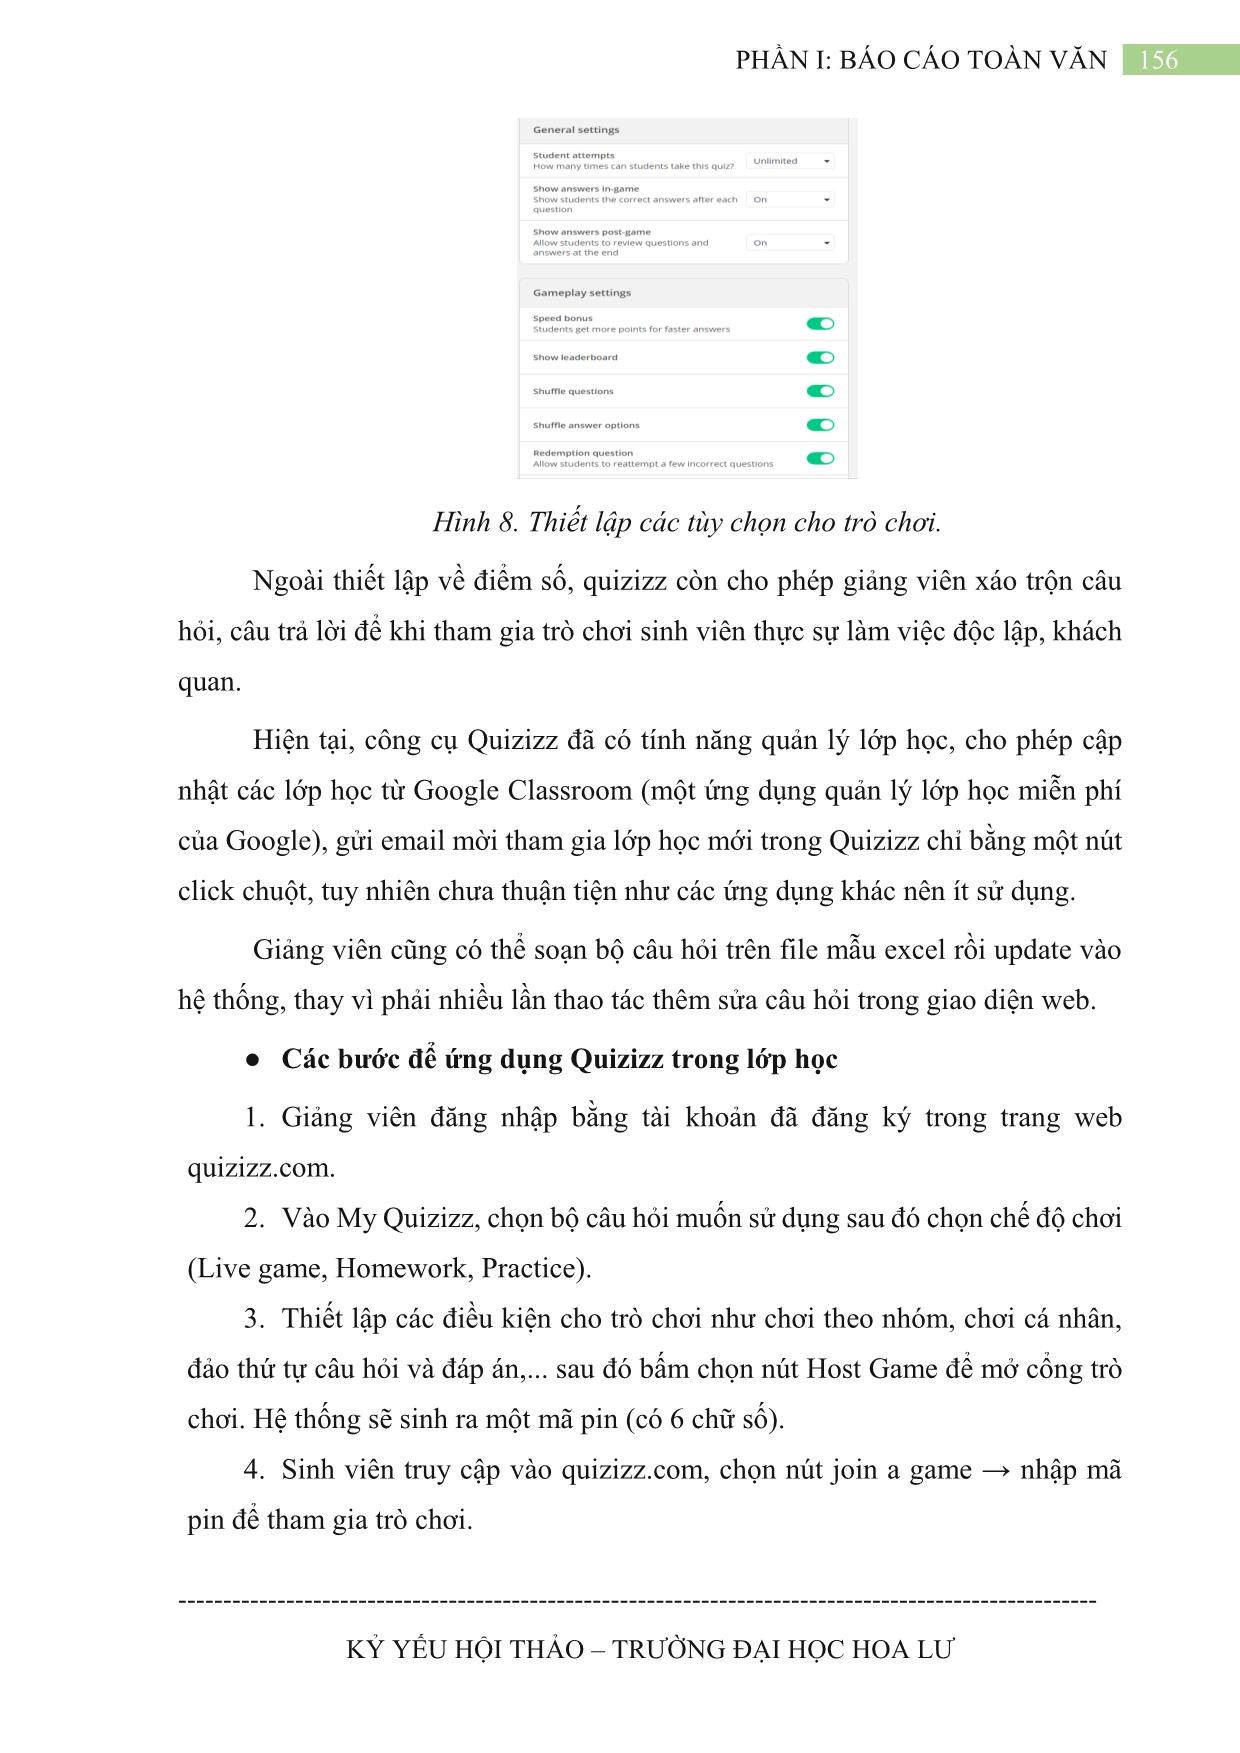 Ứng dụng công cụ Quizizz thiết kế trò chơi học tập trong giảng dạy học phần Tin học đại cương trang 7